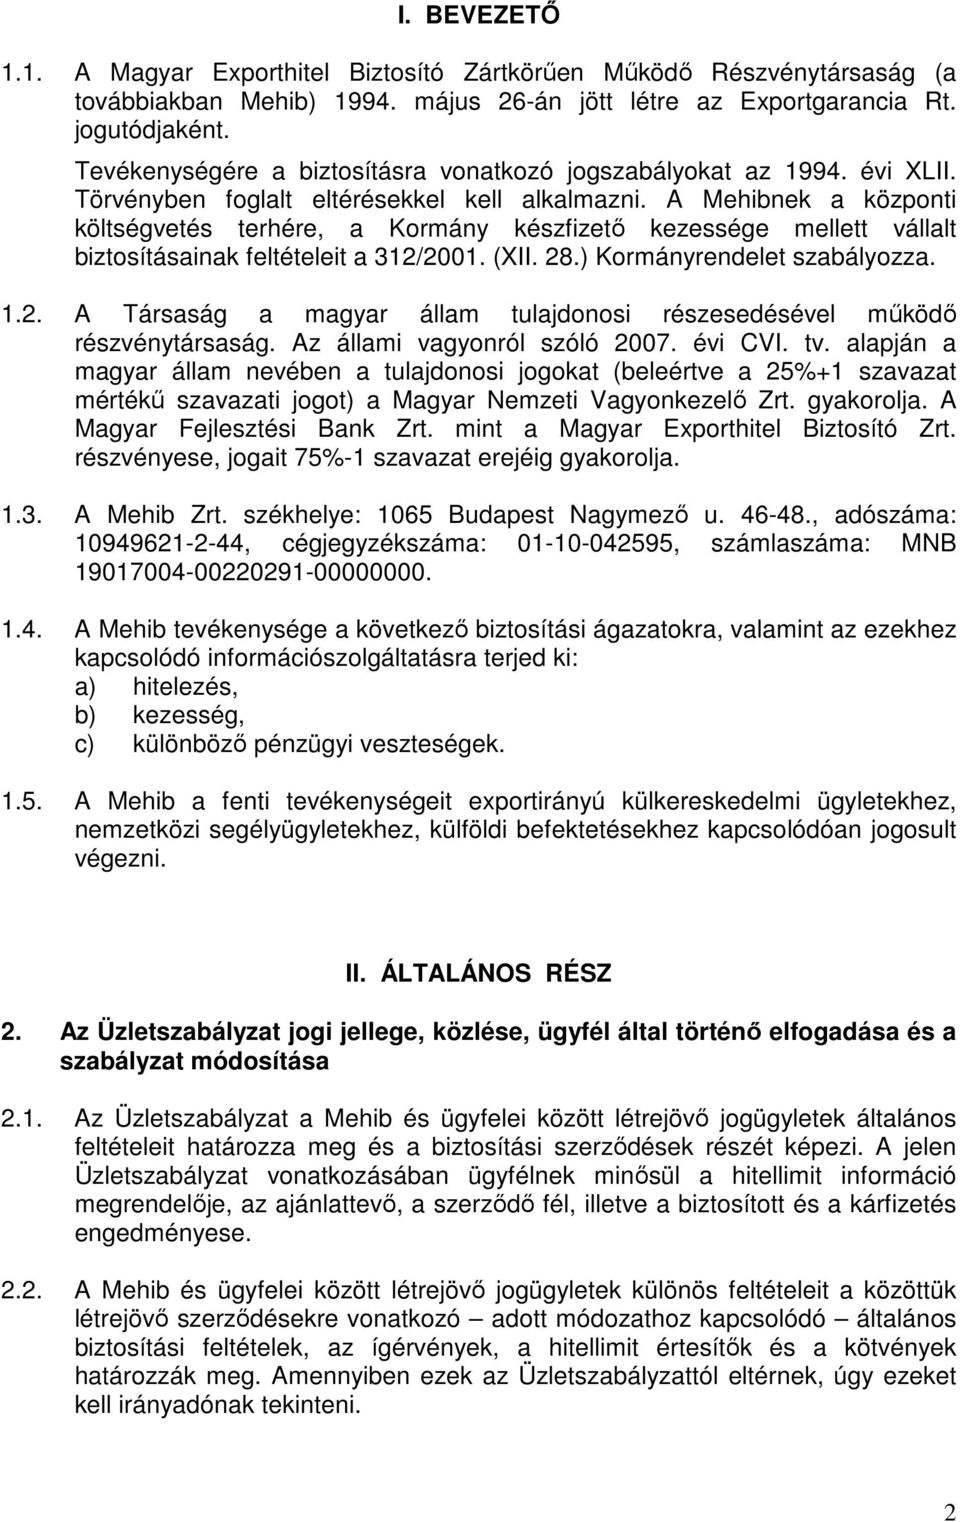 A Mehibnek a központi költségvetés terhére, a Kormány készfizető kezessége mellett vállalt biztosításainak feltételeit a 312/